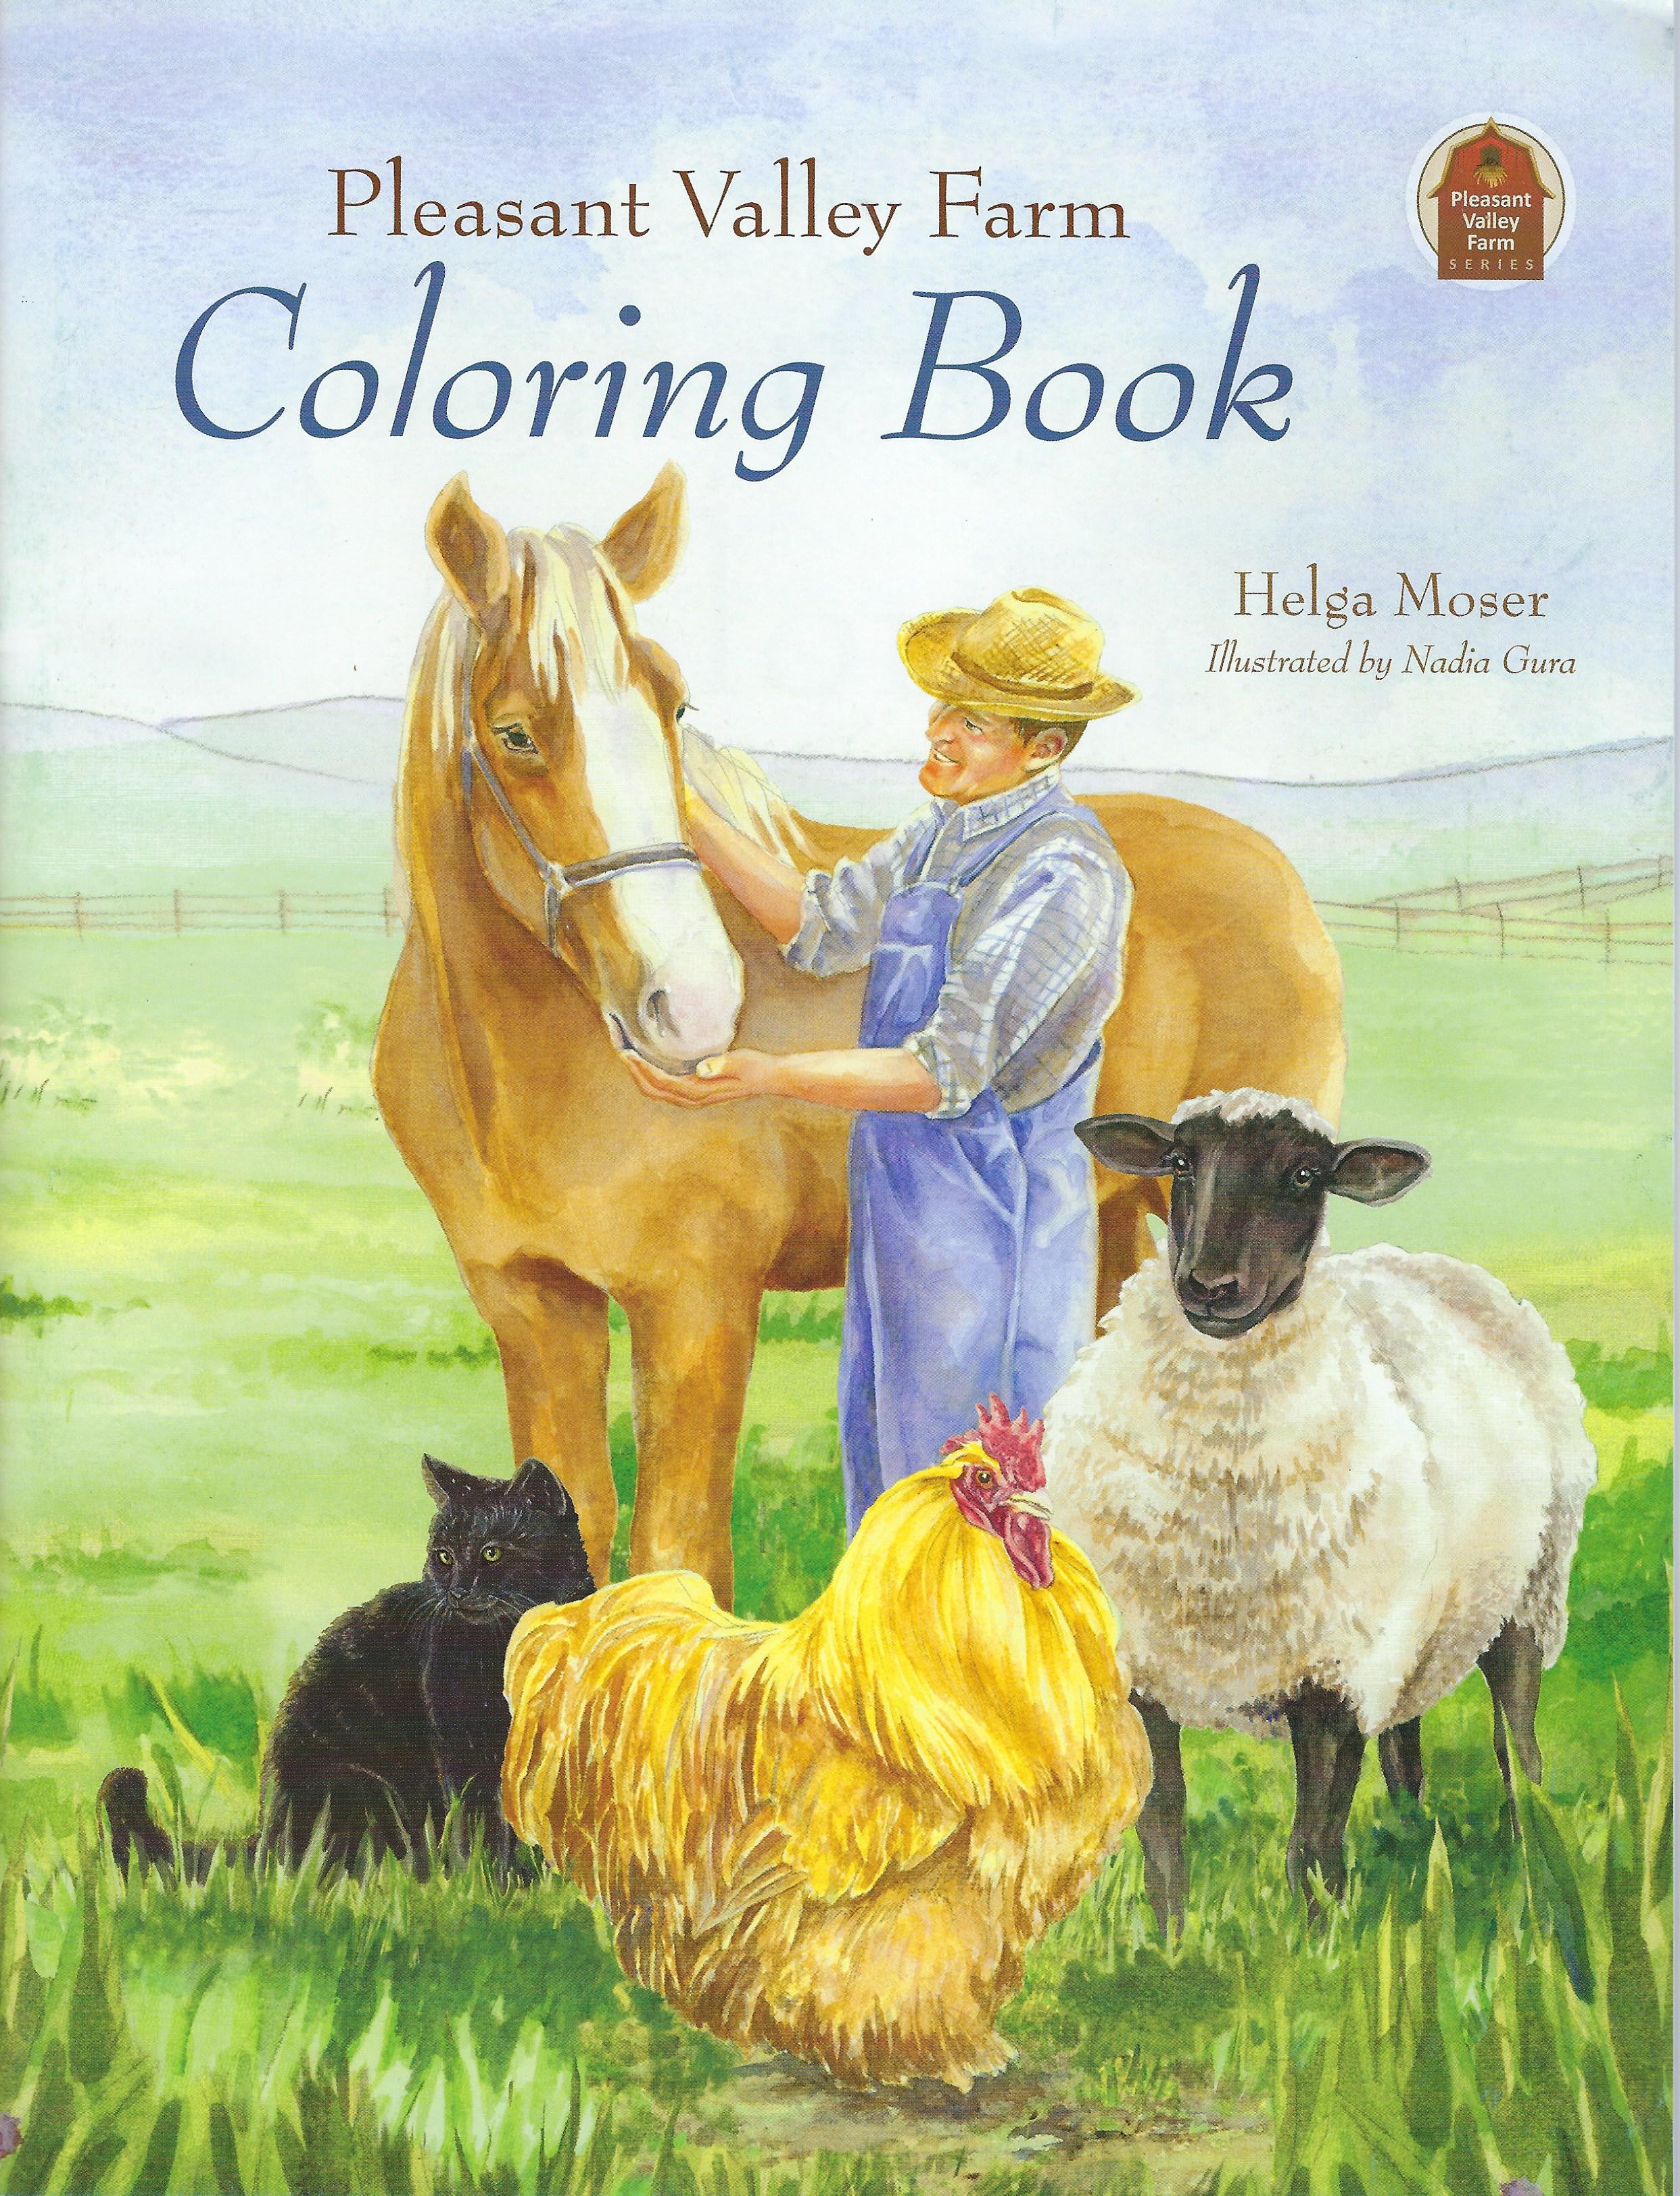 PLEASANT VALLEY FARM COLORING BOOK Helga Moser